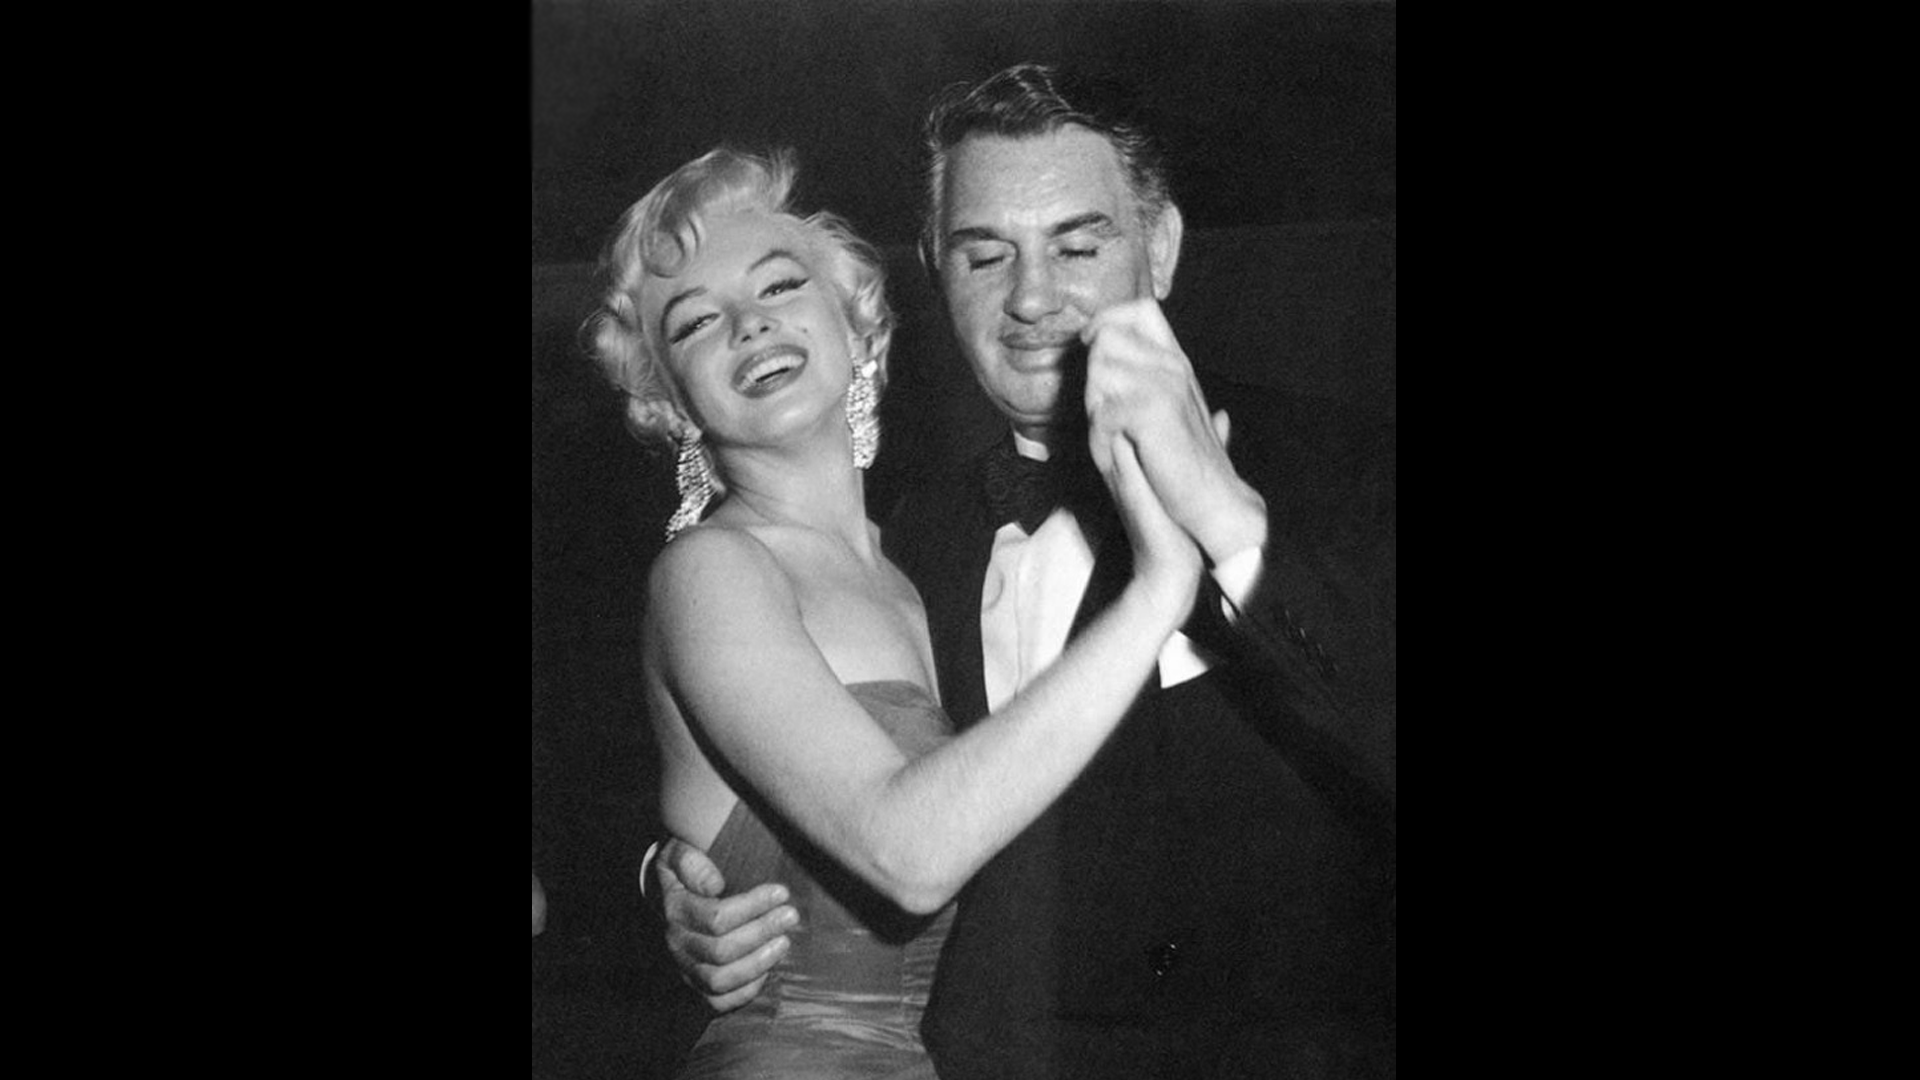 Charles Feldman dancing with Marilyn Monroe